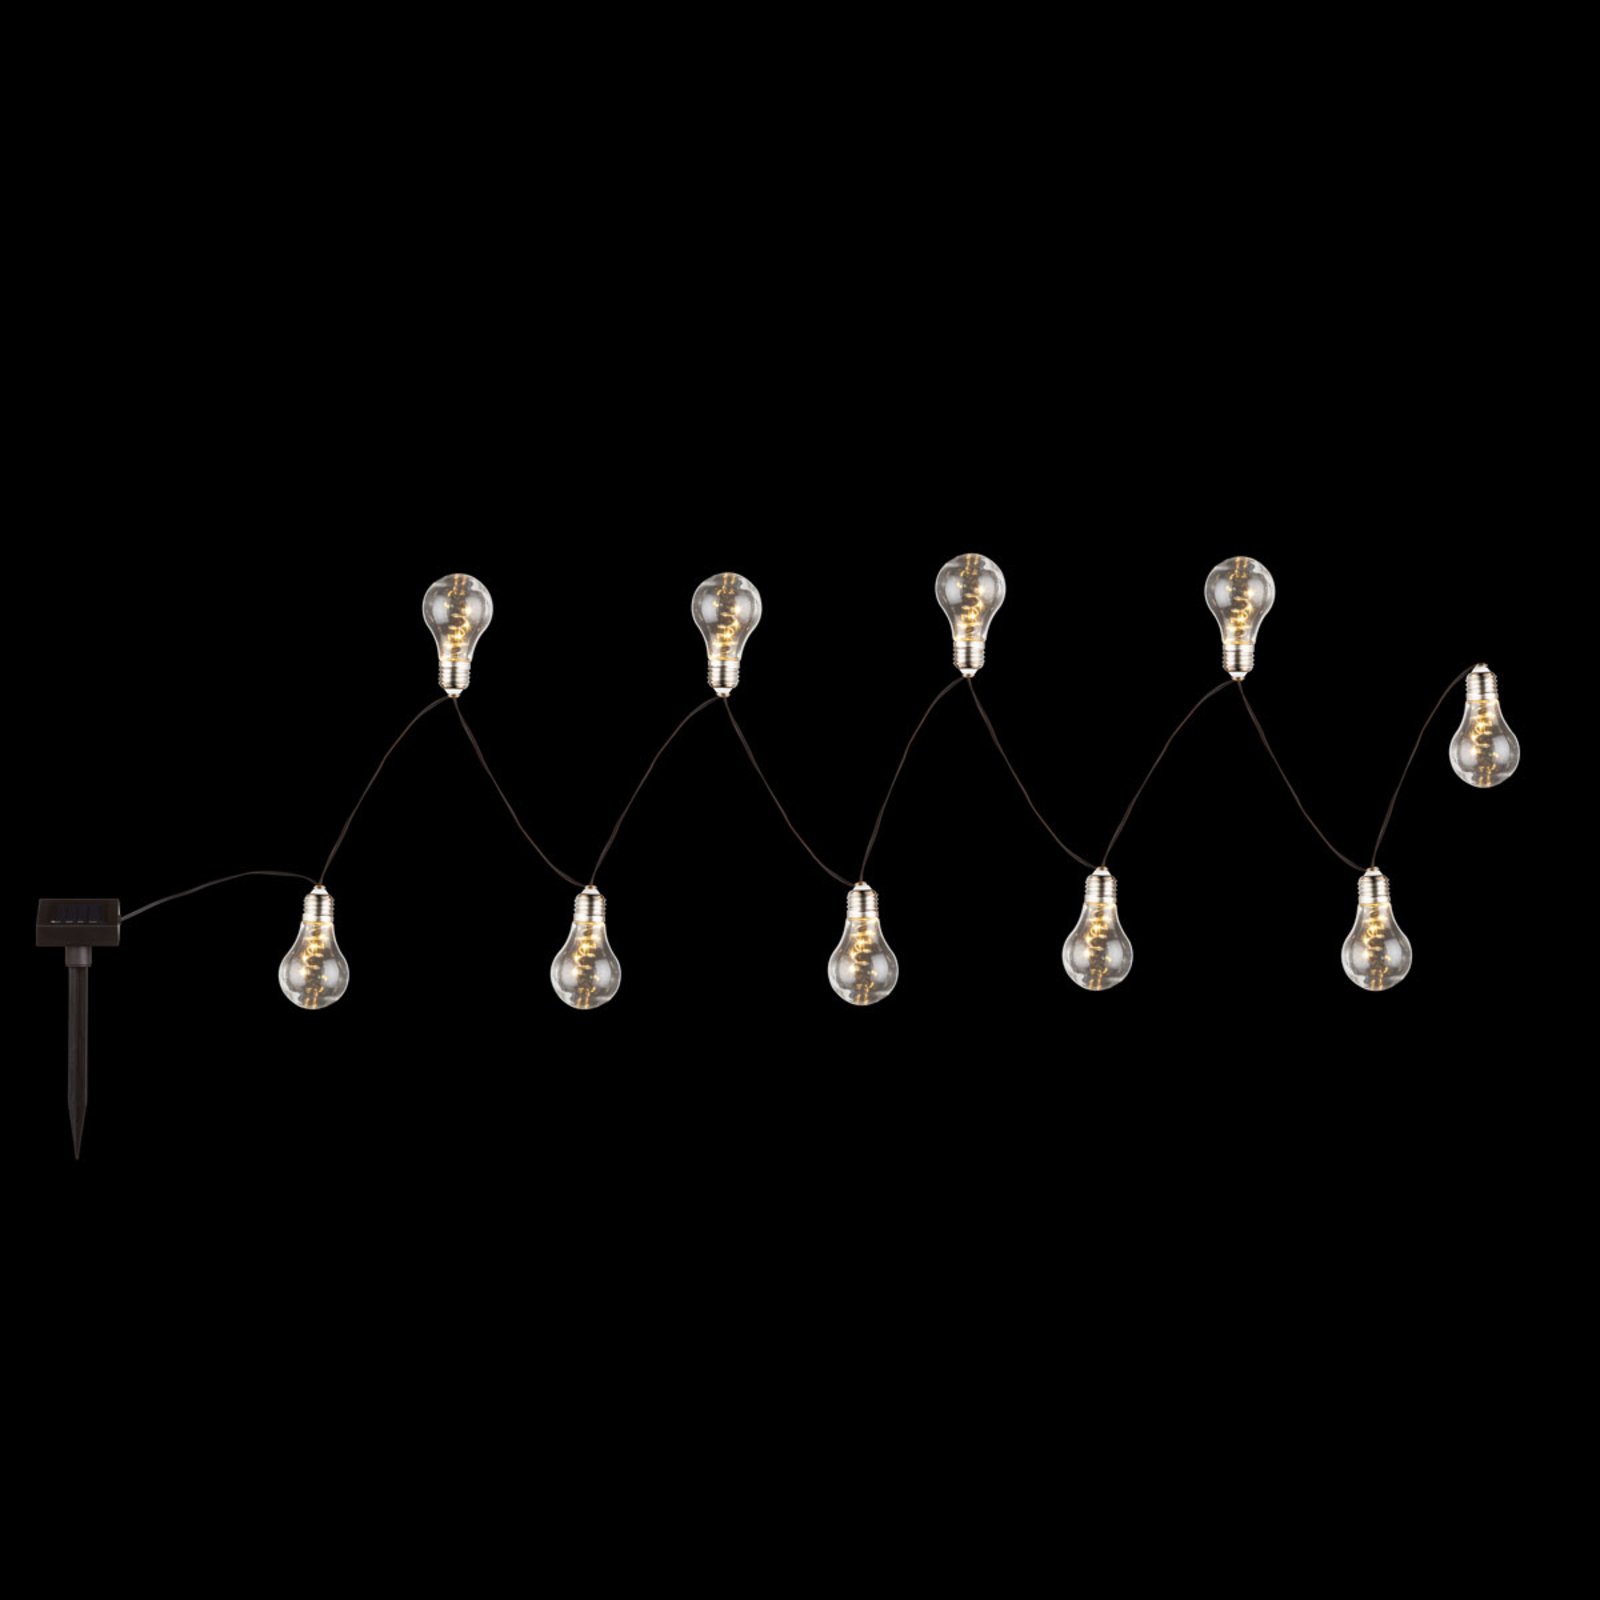 LED solární světelný řetěz 33708-10, stříbrný kov